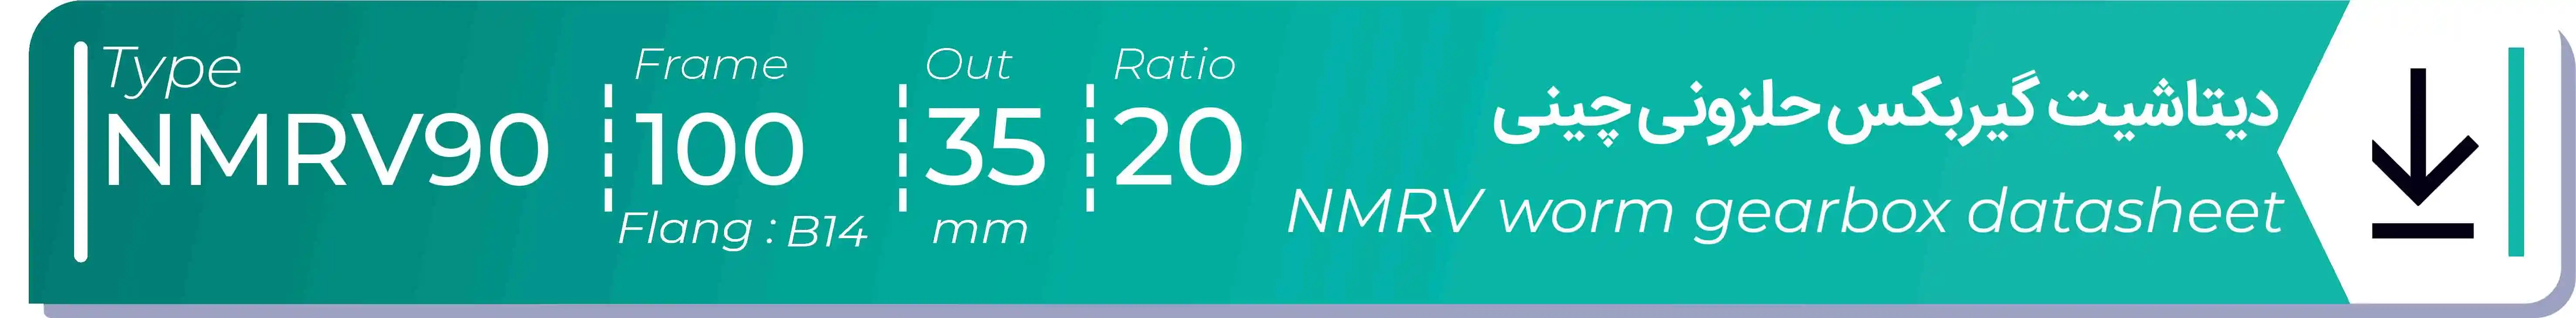  دیتاشیت و مشخصات فنی گیربکس حلزونی چینی   NMRV90  -  با خروجی 35- میلی متر و نسبت20 و فریم 100